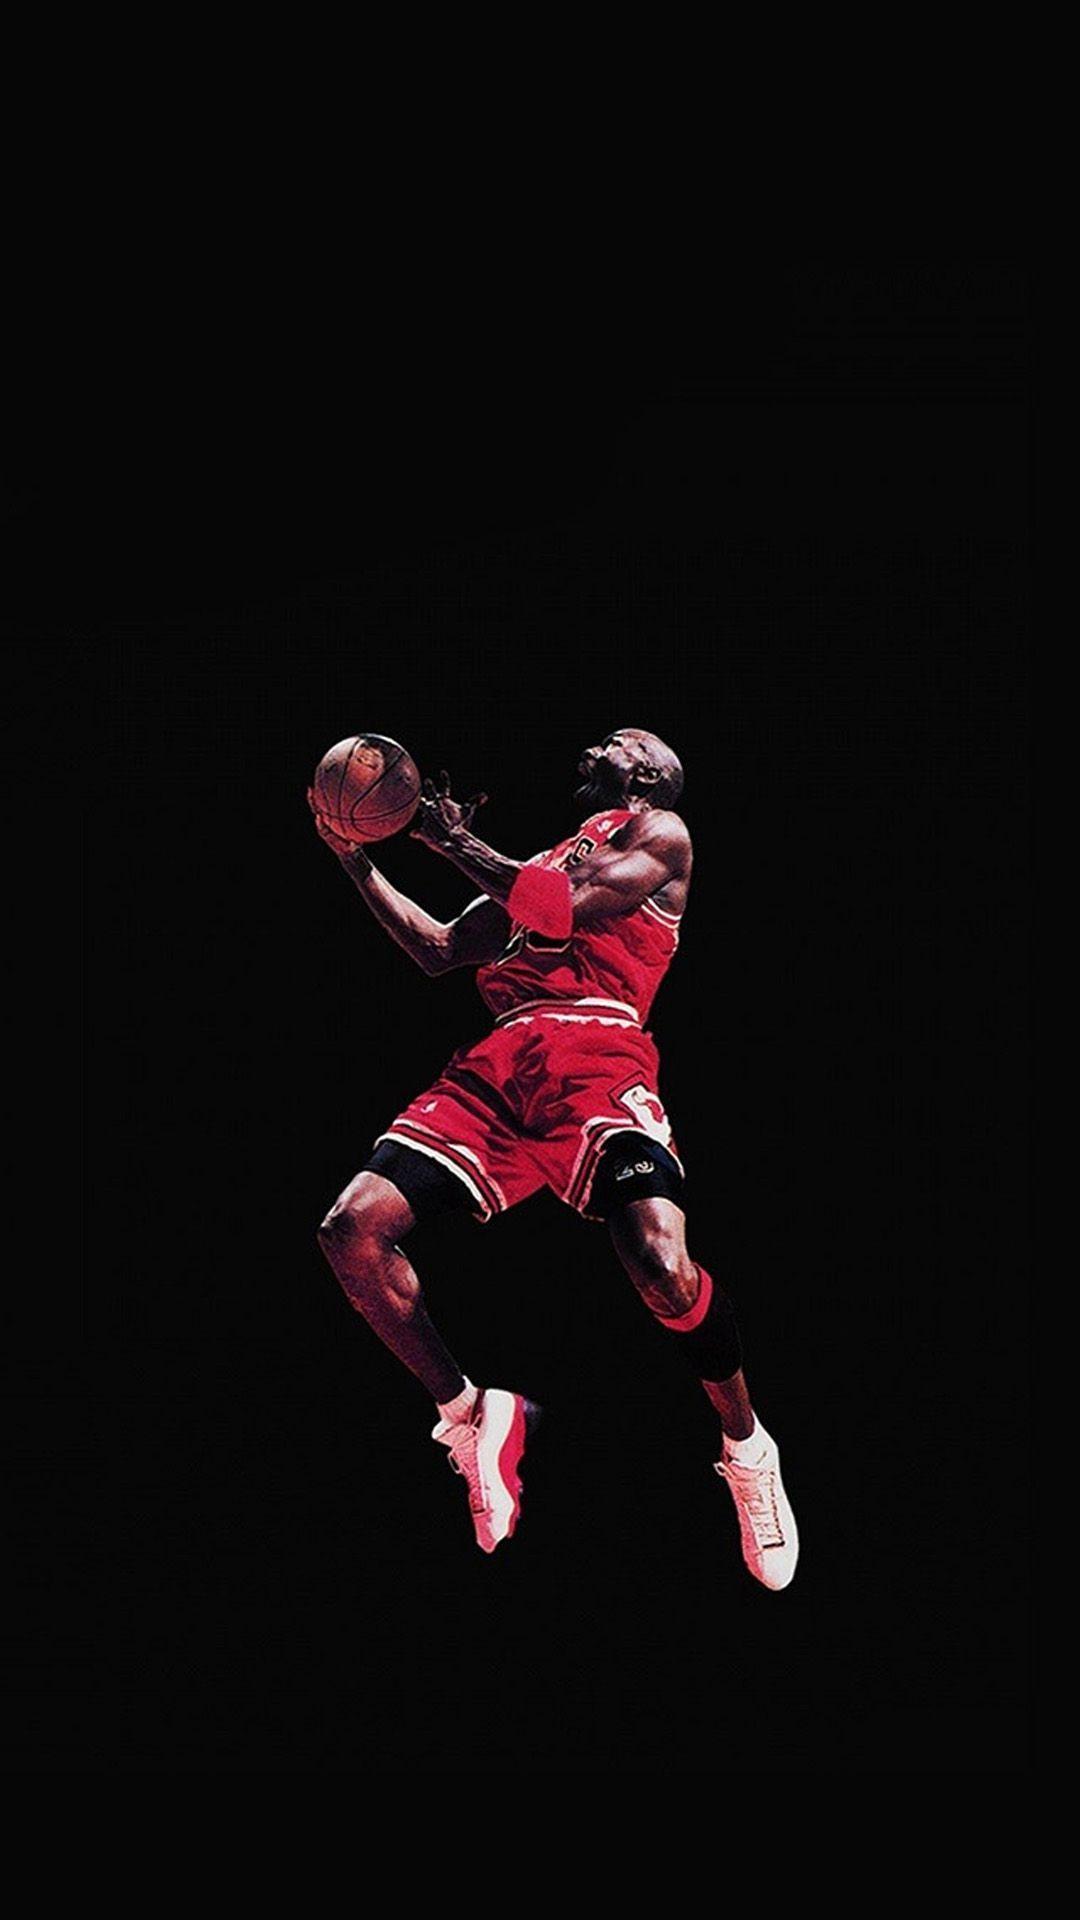 Air Jordan Wallpapers for Galaxy S5.jpg